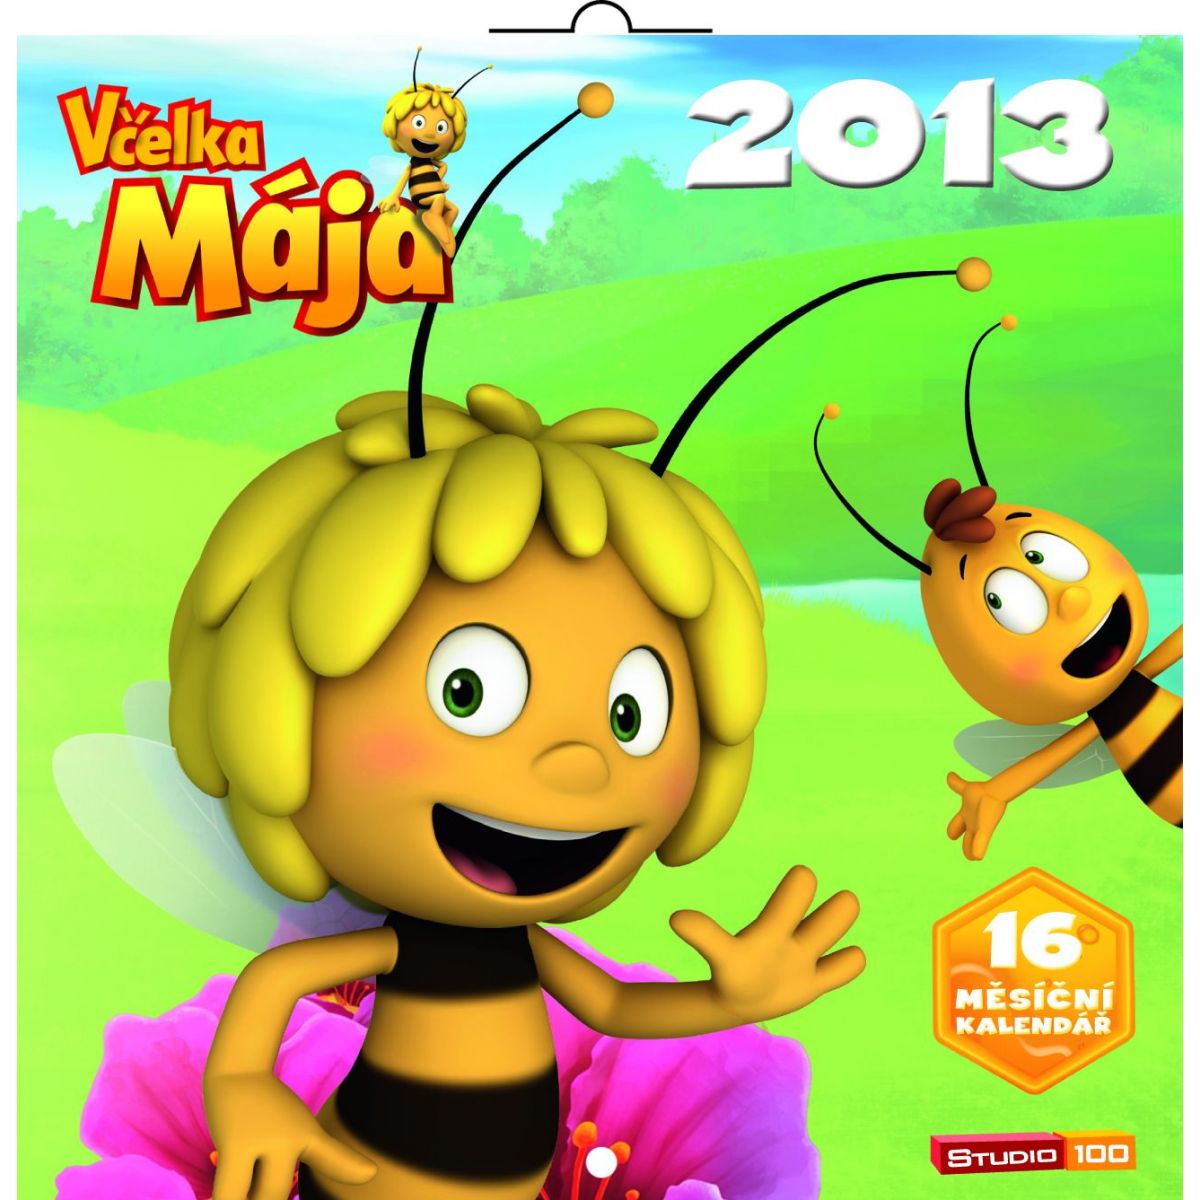 Včelka Mája, poznámkový kalendář 2013, 30 x 60 cm